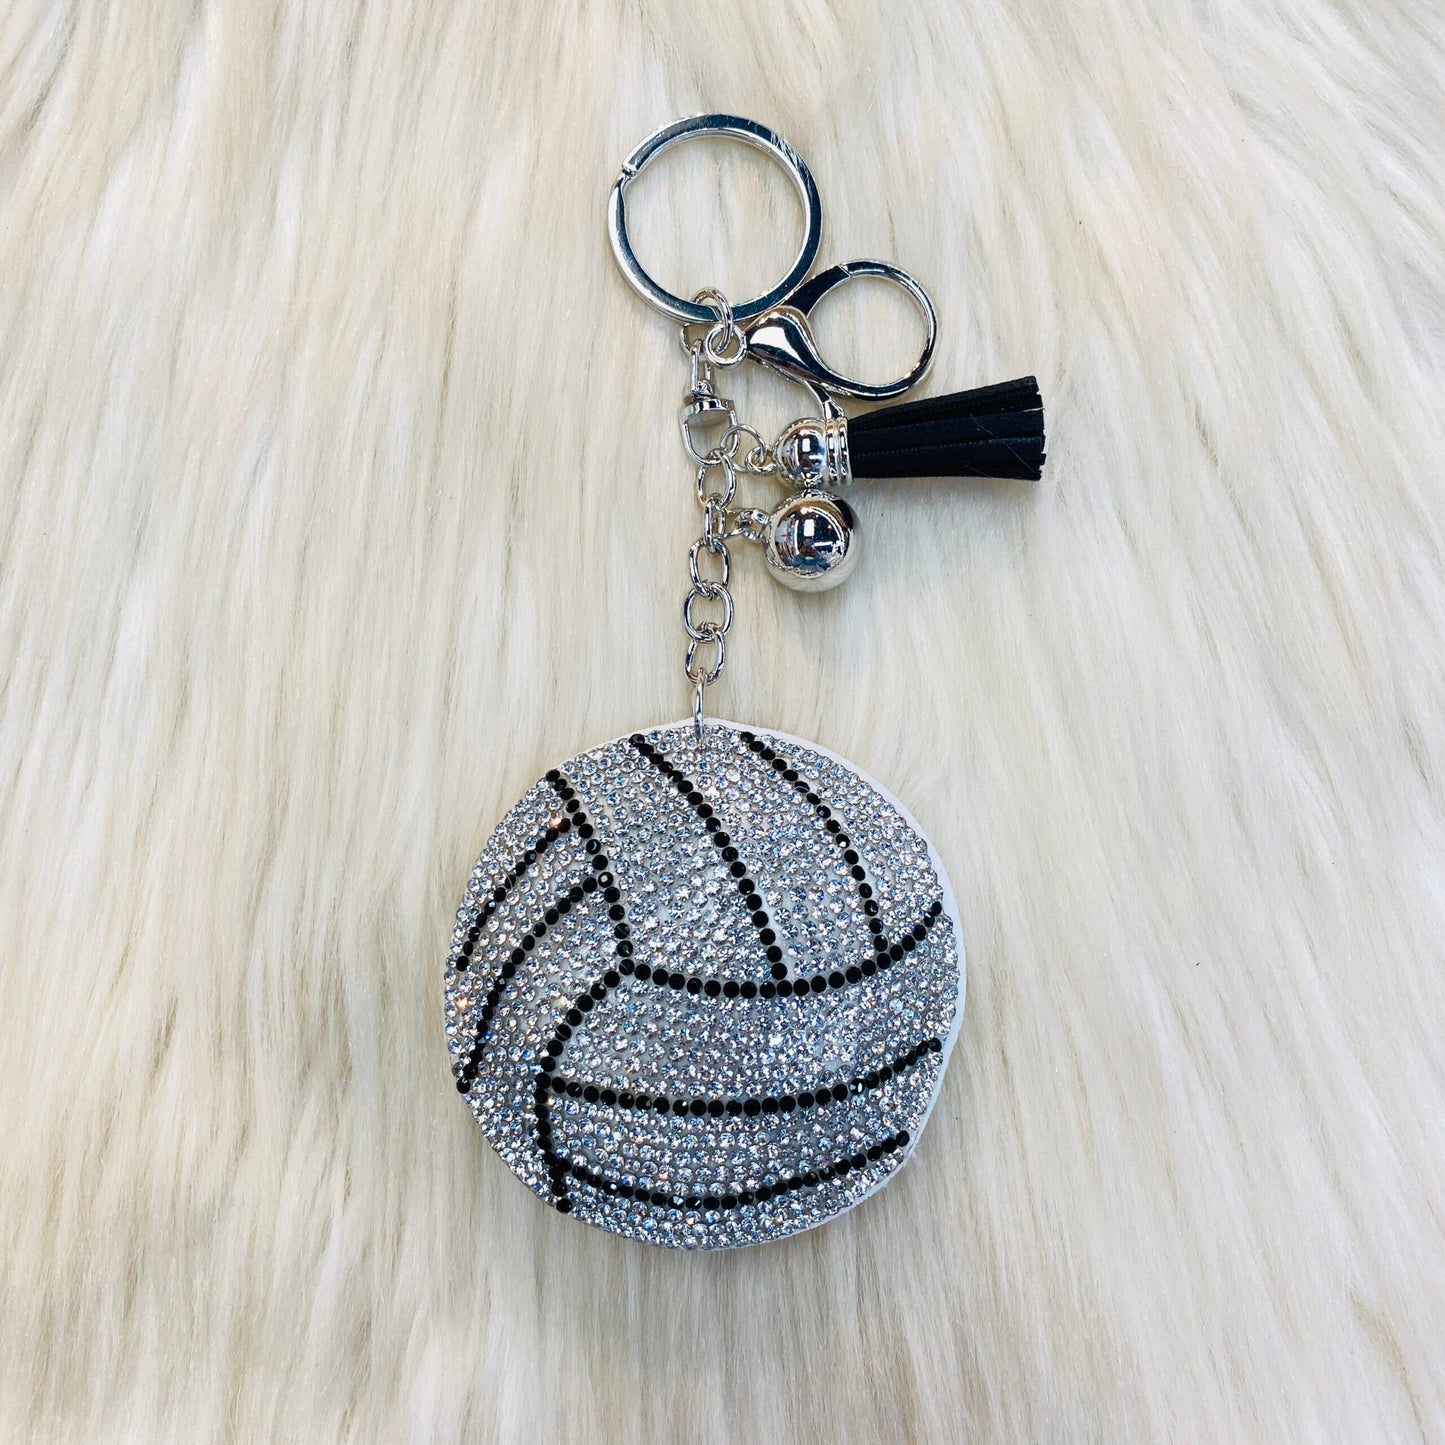 Volleyball Keychain